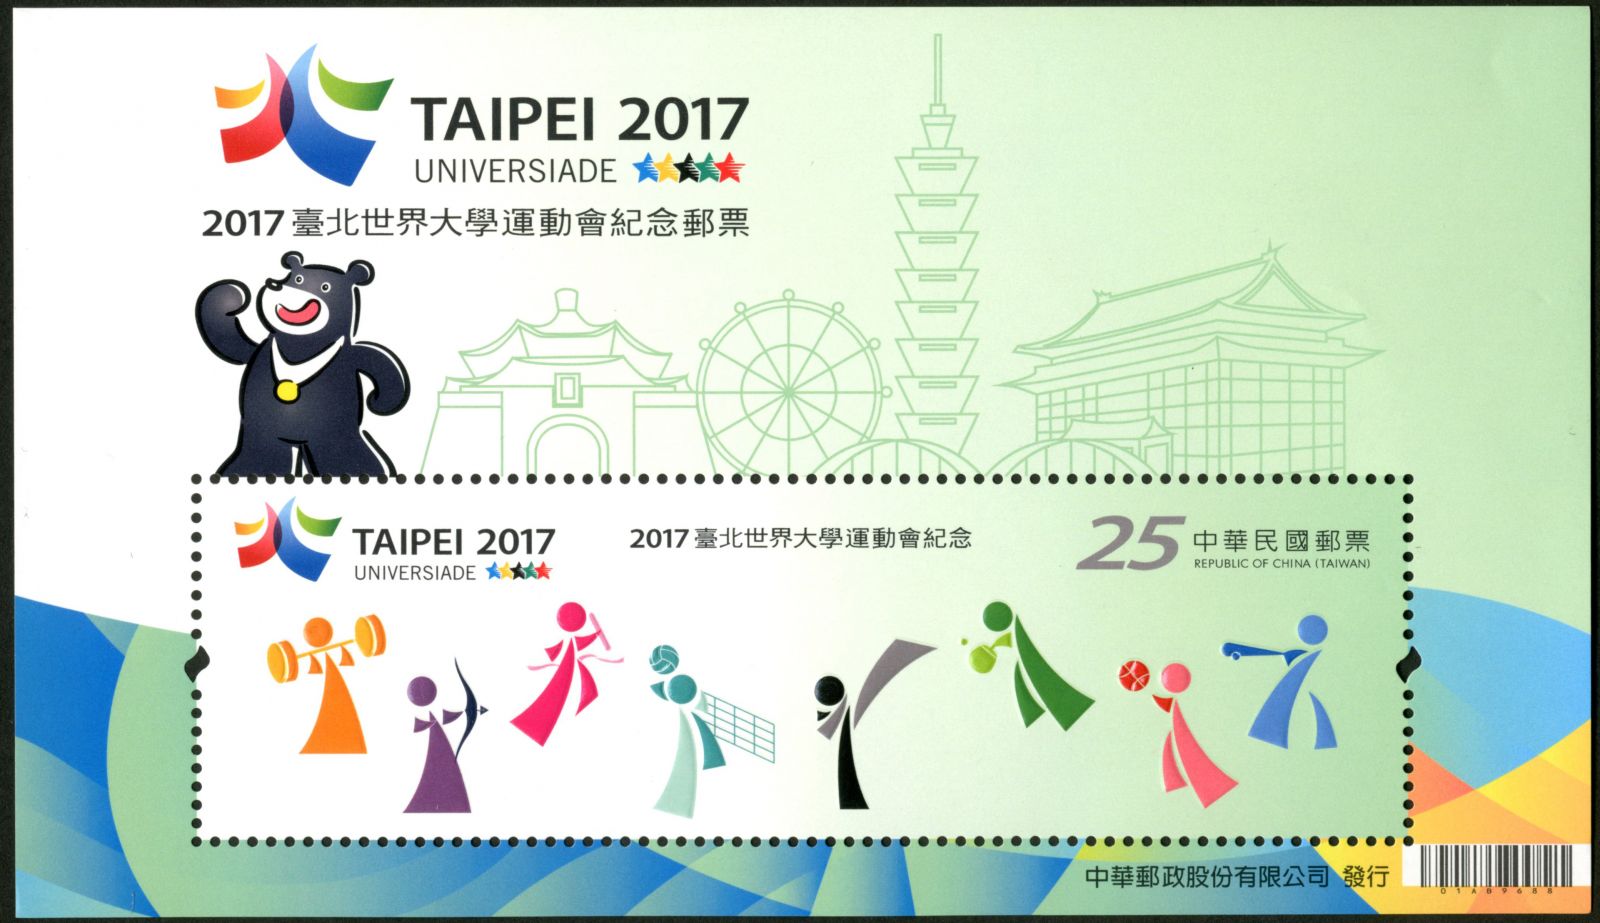 2017臺北世界大學運動會紀念郵票發行典禮 邀請民眾書寫集氣為中華健兒加油 | 文章內置圖片